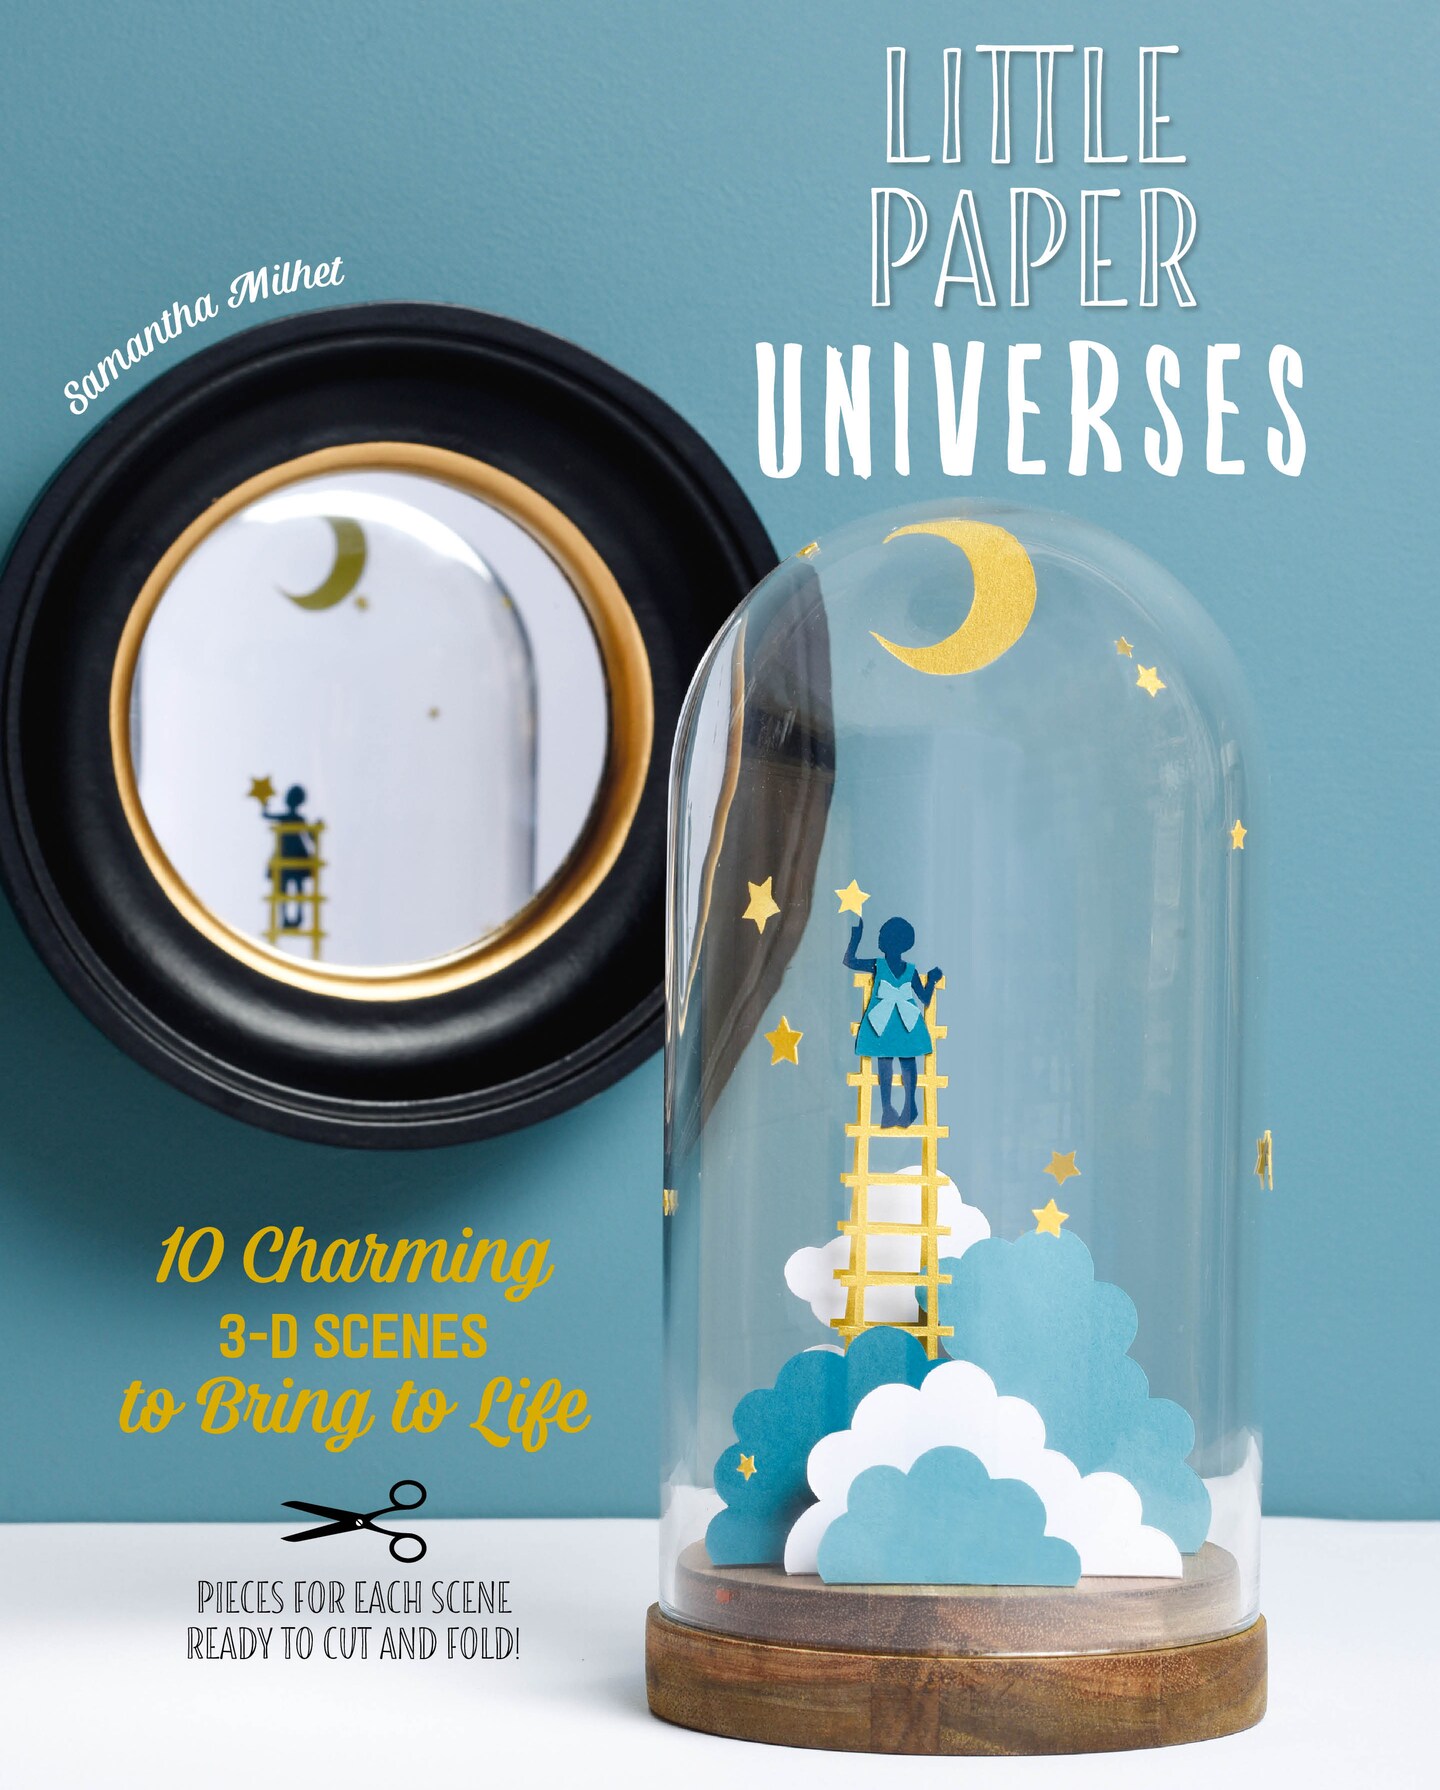 Little Paper Universes